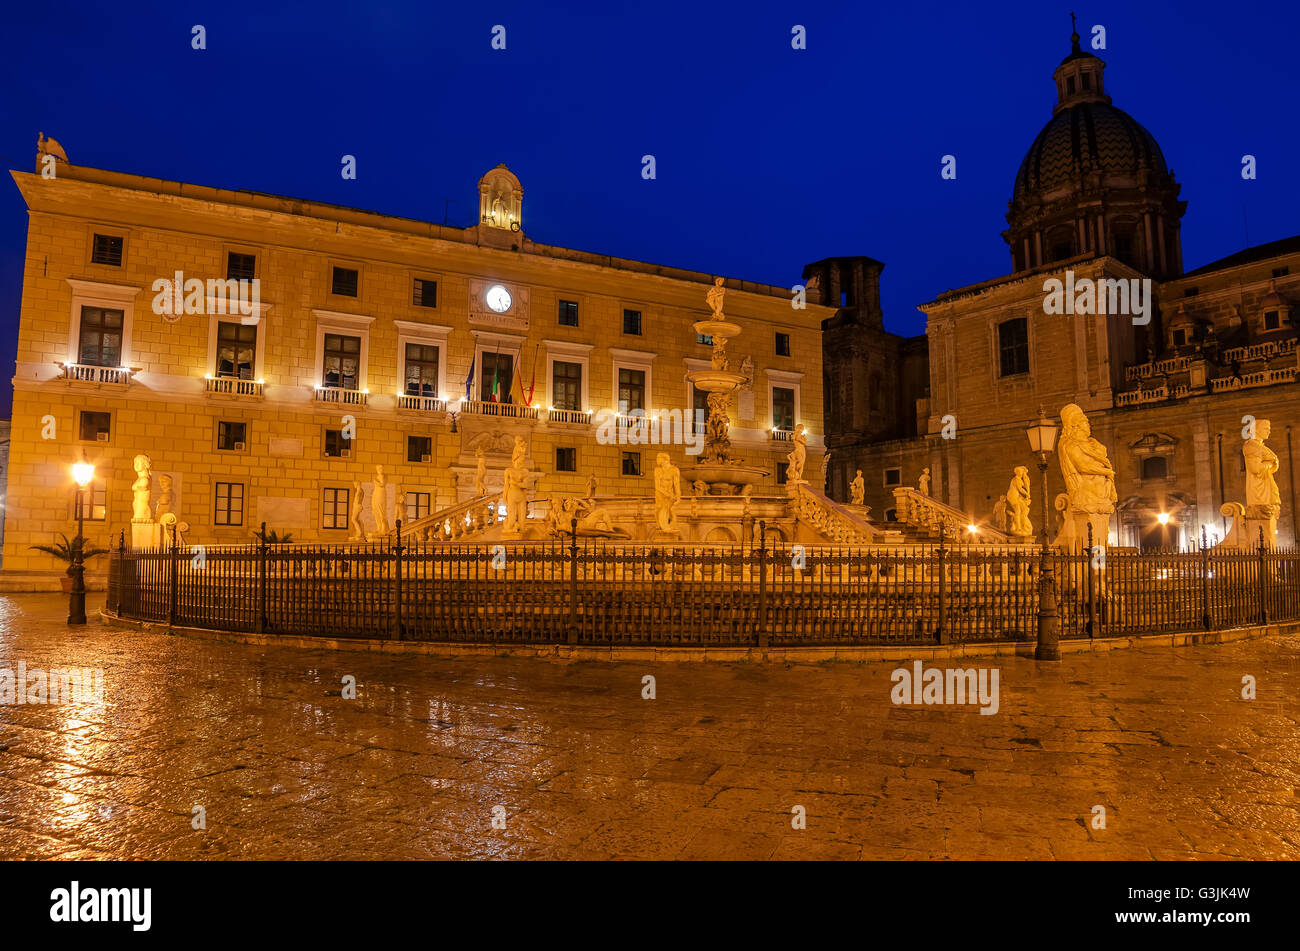 Palermo, Sicily, Italy: Piazza Pretoria Stock Photo